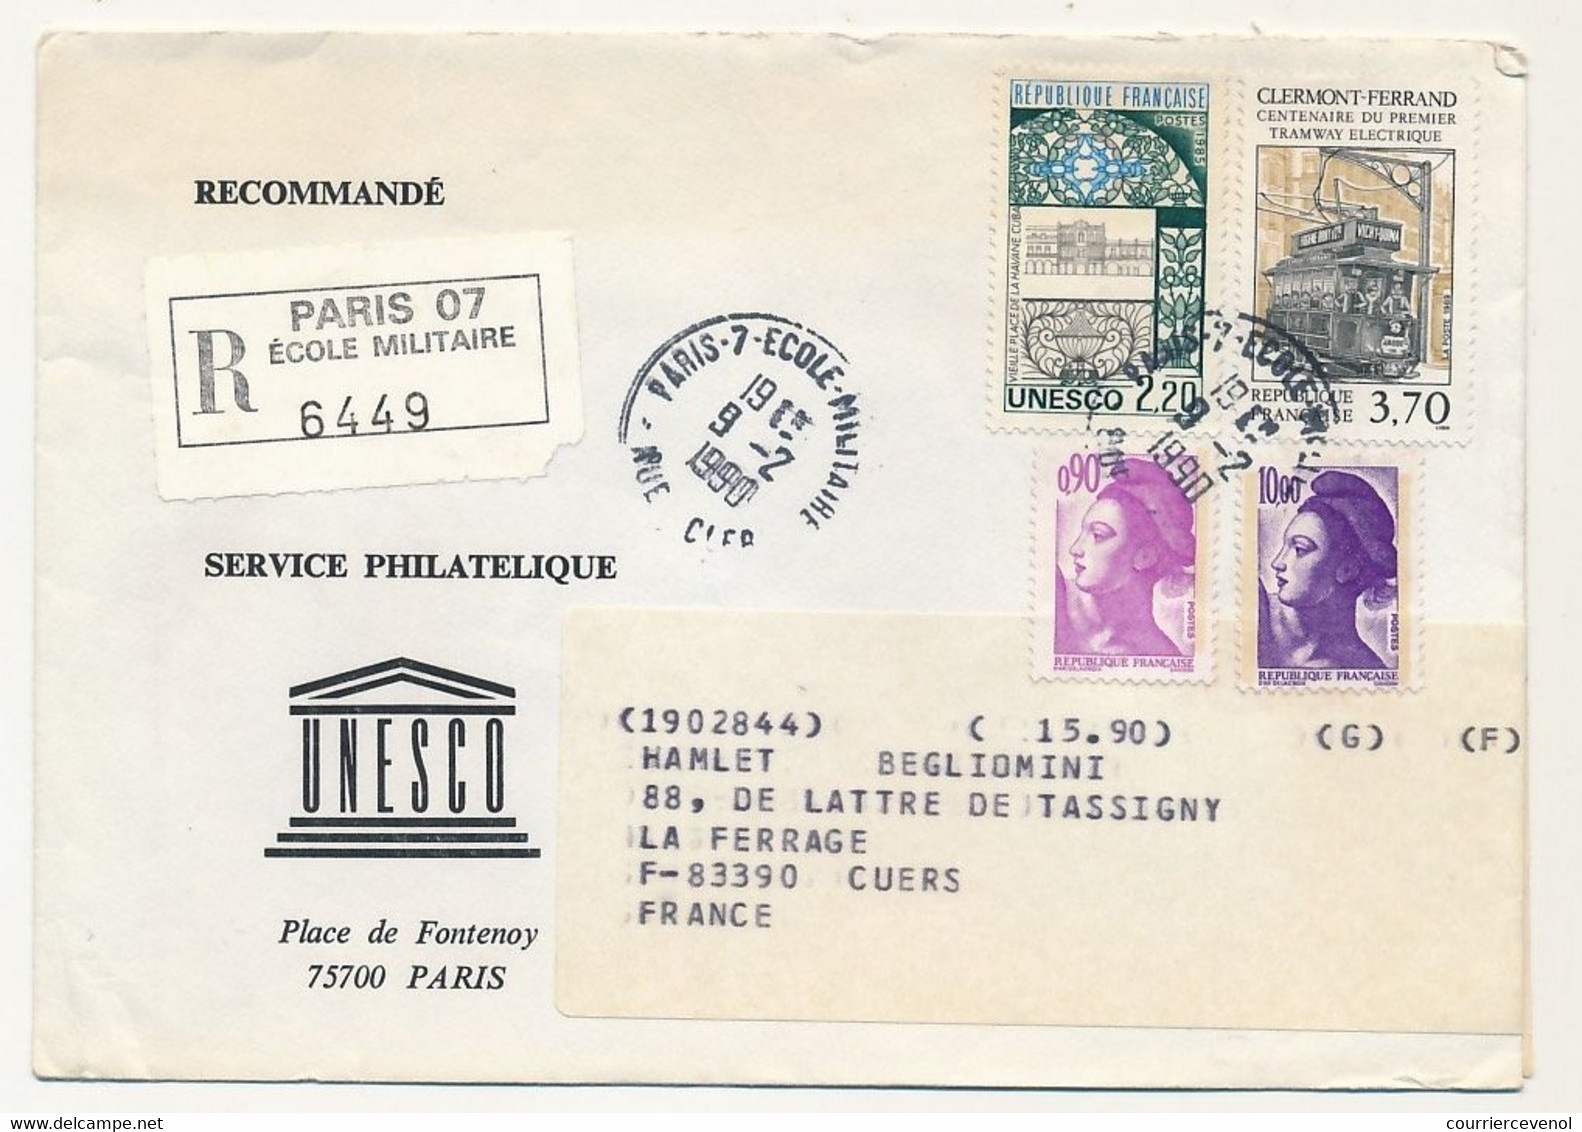 FRANCE - UNESCO - 8 Enveloppes Service Philatélique Unesco Avec Timbres De Service - Obl Paris 7 Rue Clerc - 1989/90 - Lettres & Documents